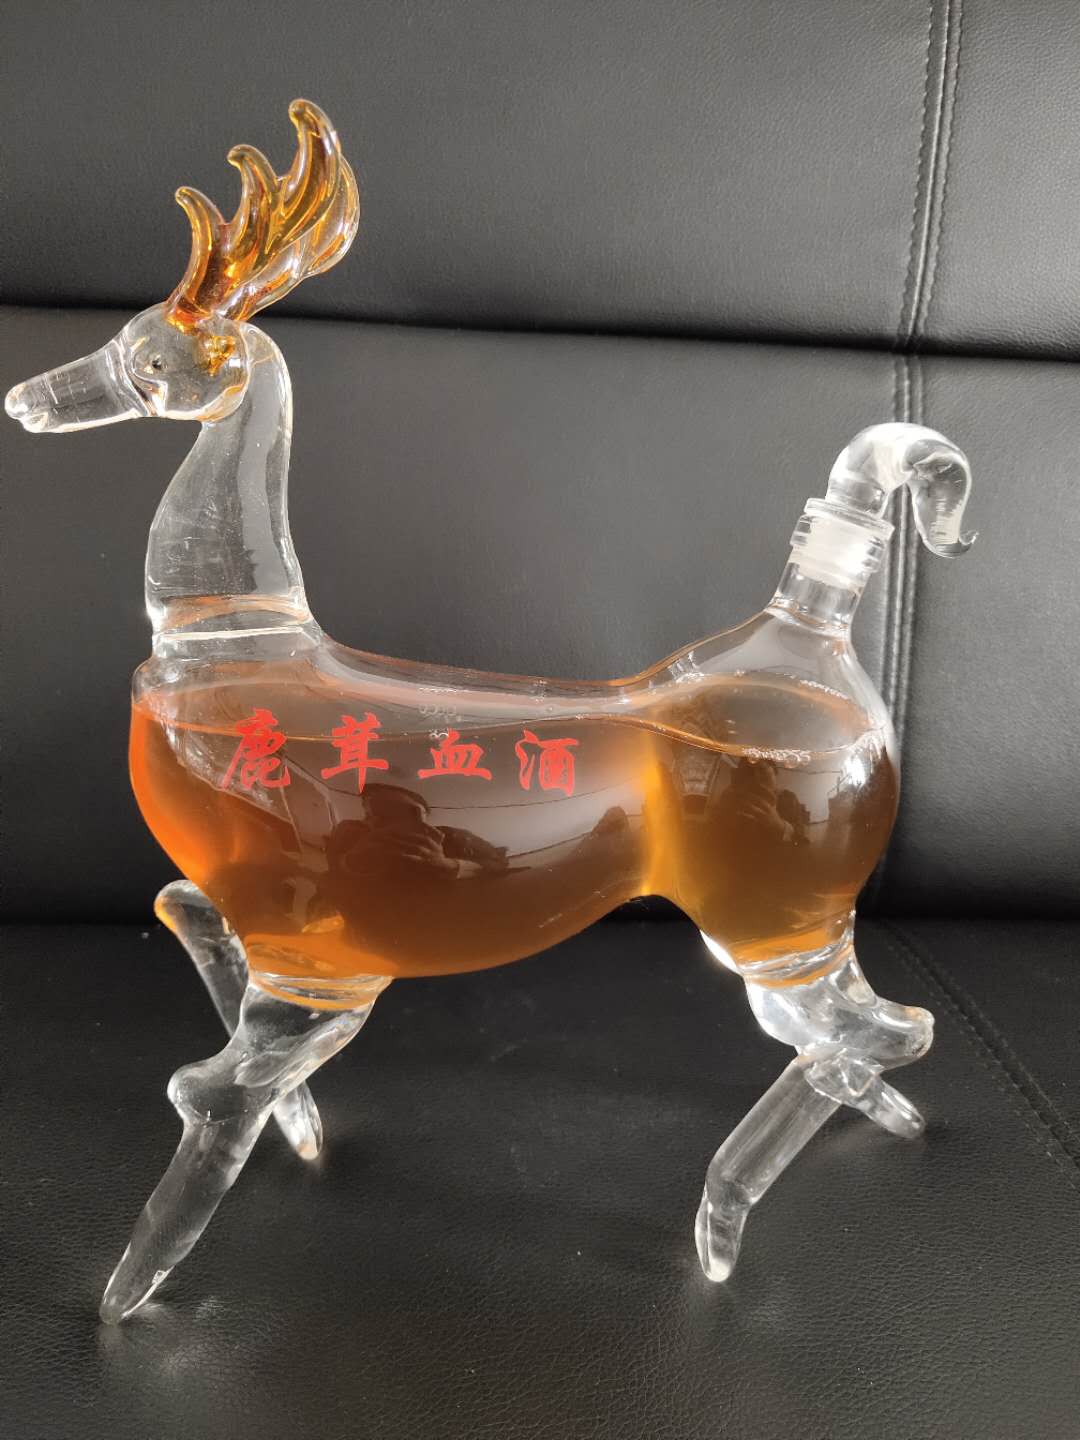 鹿造型玻璃酒瓶小鹿形状艺术酒瓶